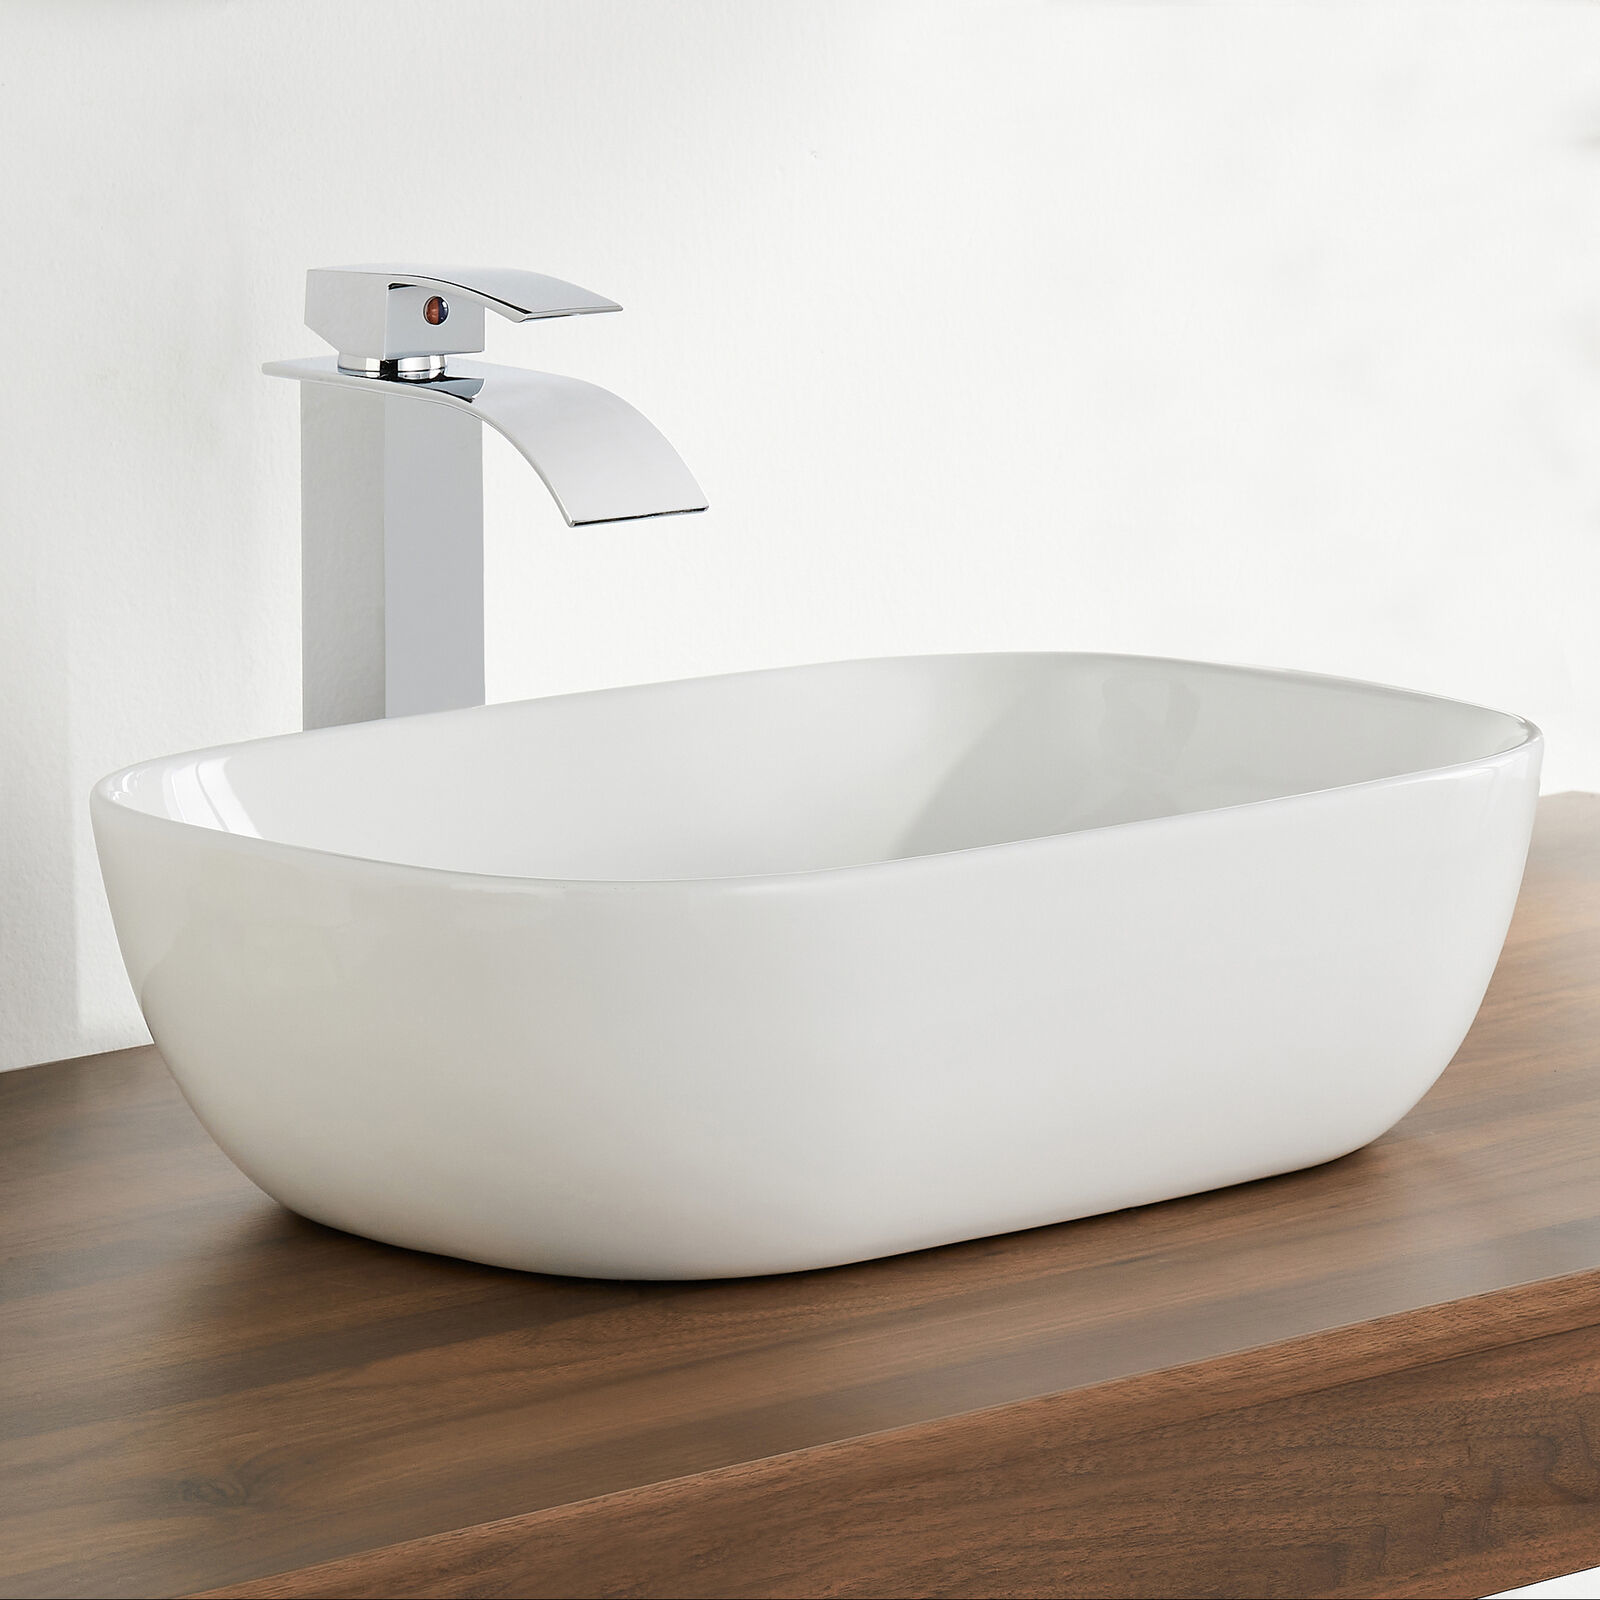 DeerValley Ceramic Bathroom Vessel Sink / Bathroom Sink Faucet / Pop-up Drain